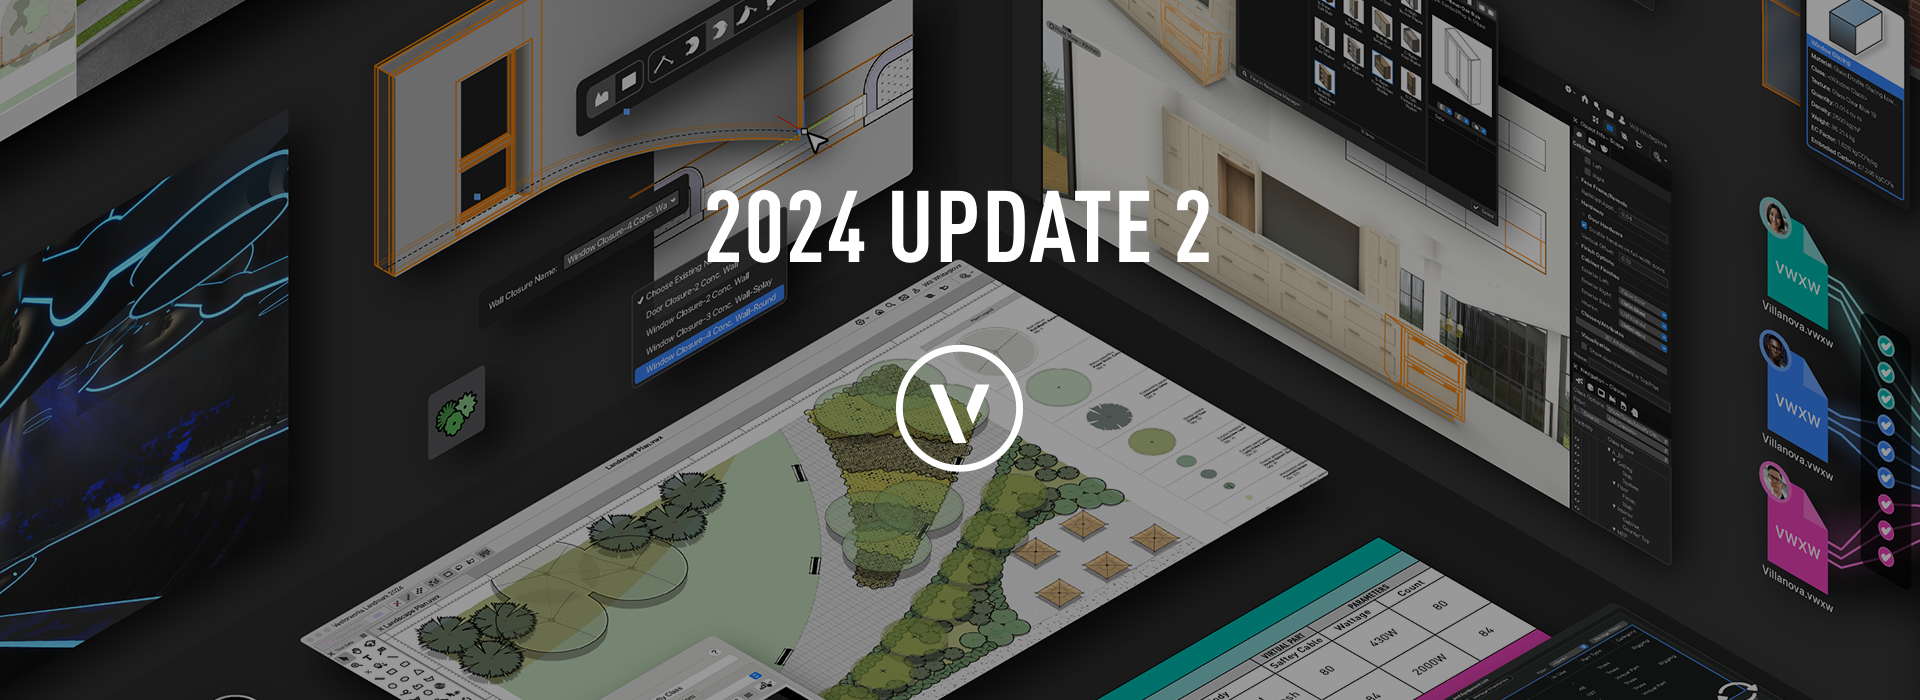 Vectorworks 2024 Update 2 verfügbar